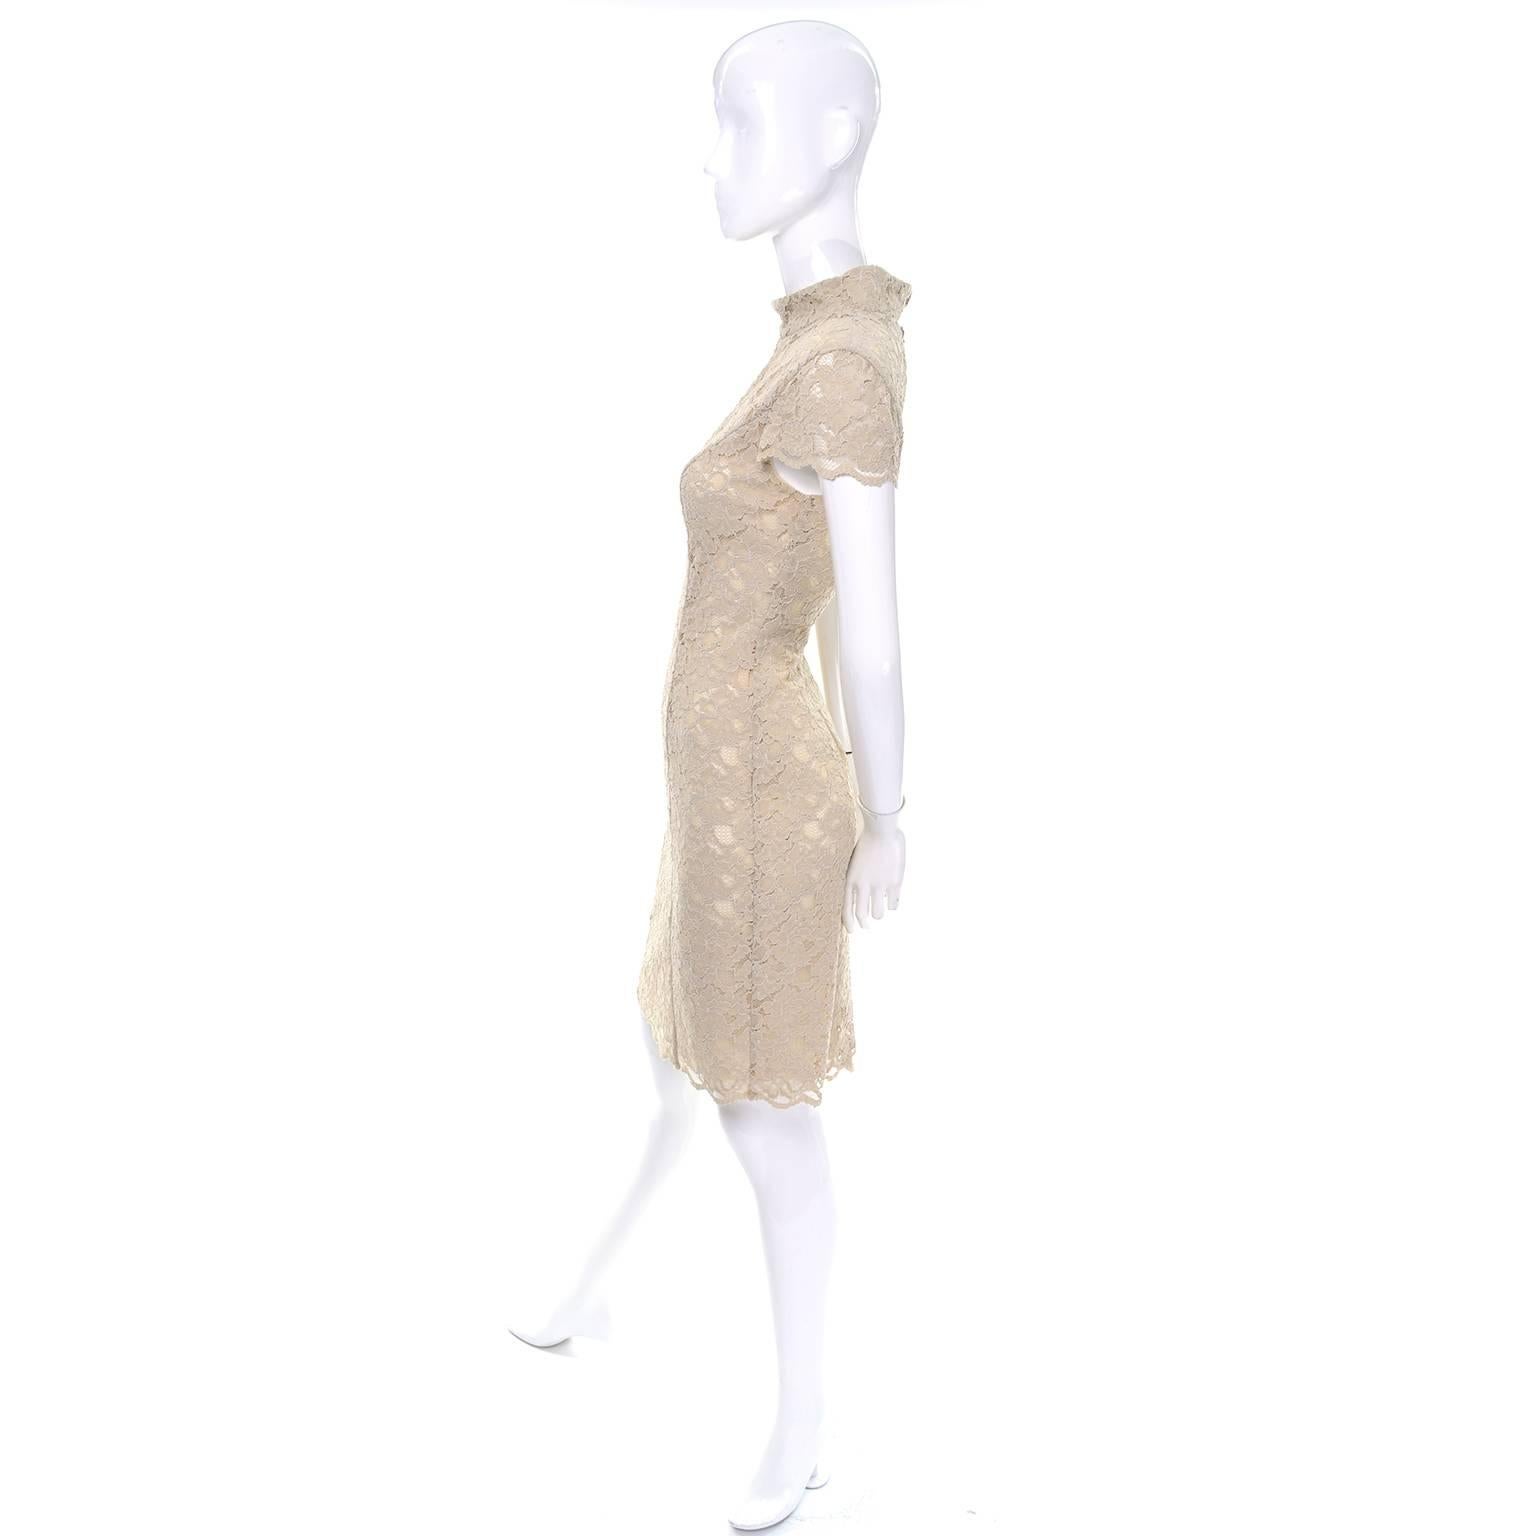 C'est une jolie robe Moschino vintage des années 1990, pas cher et chic, en dentelle florale, doublée dans le corps, avec des manches bouchons transparentes. Les bords sont festonnés et la robe se ferme à l'aide d'une fermeture éclair dans le dos et